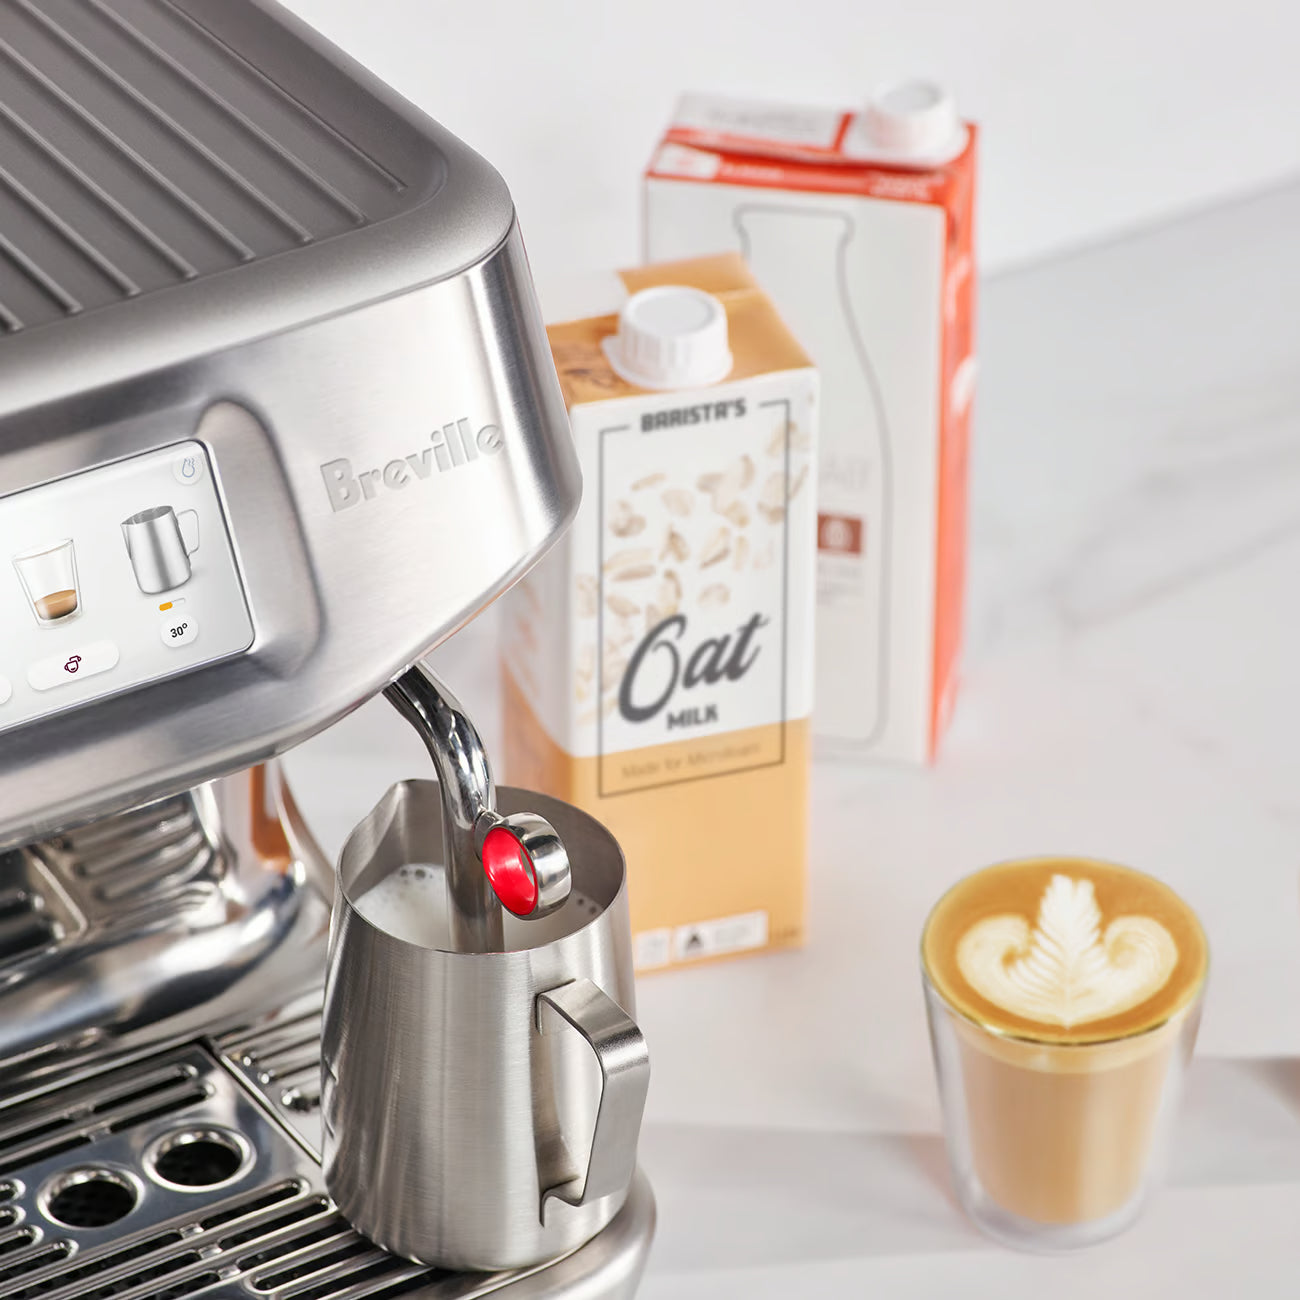 Breville Barista Touch Impress Automatic Espresso Coffee Machine